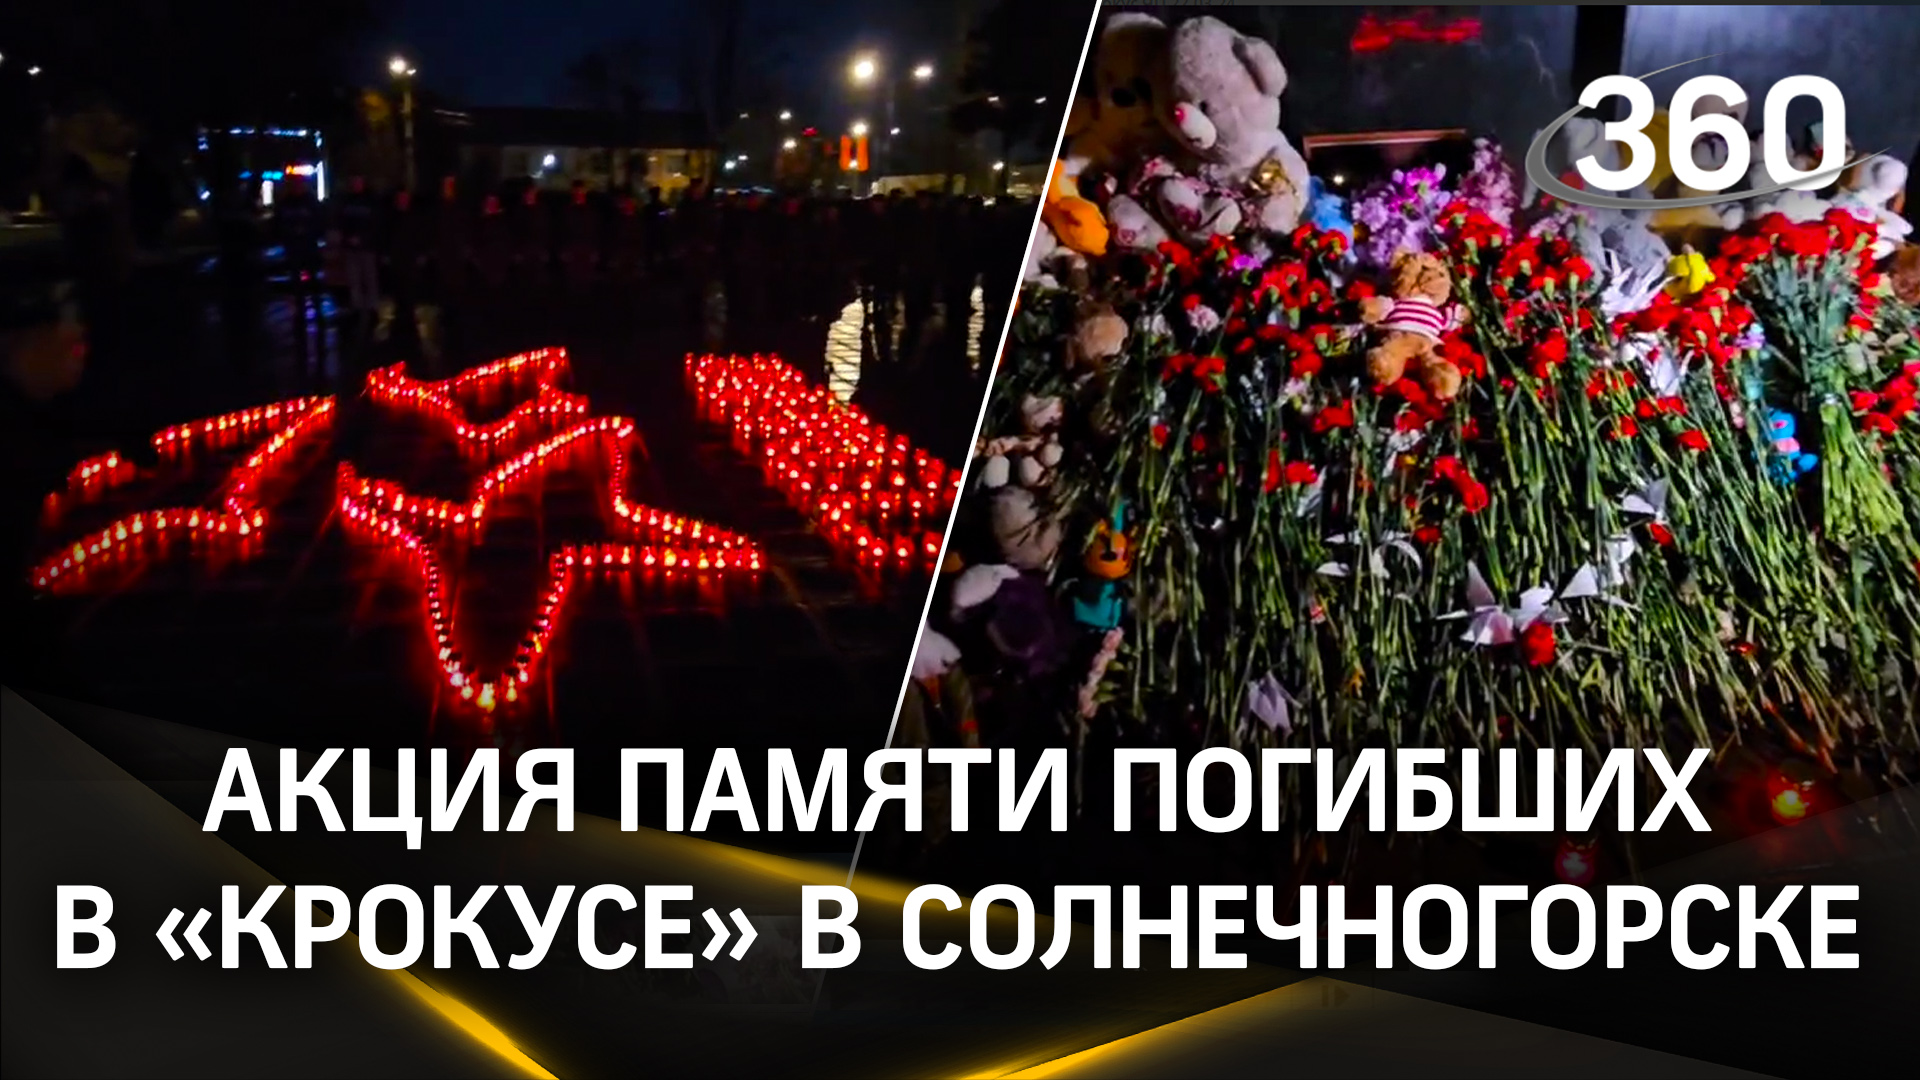 Акция памяти погибших в «Крокусе» проходит в Солнечногорске. Стихийный мемориал усыпан цветами